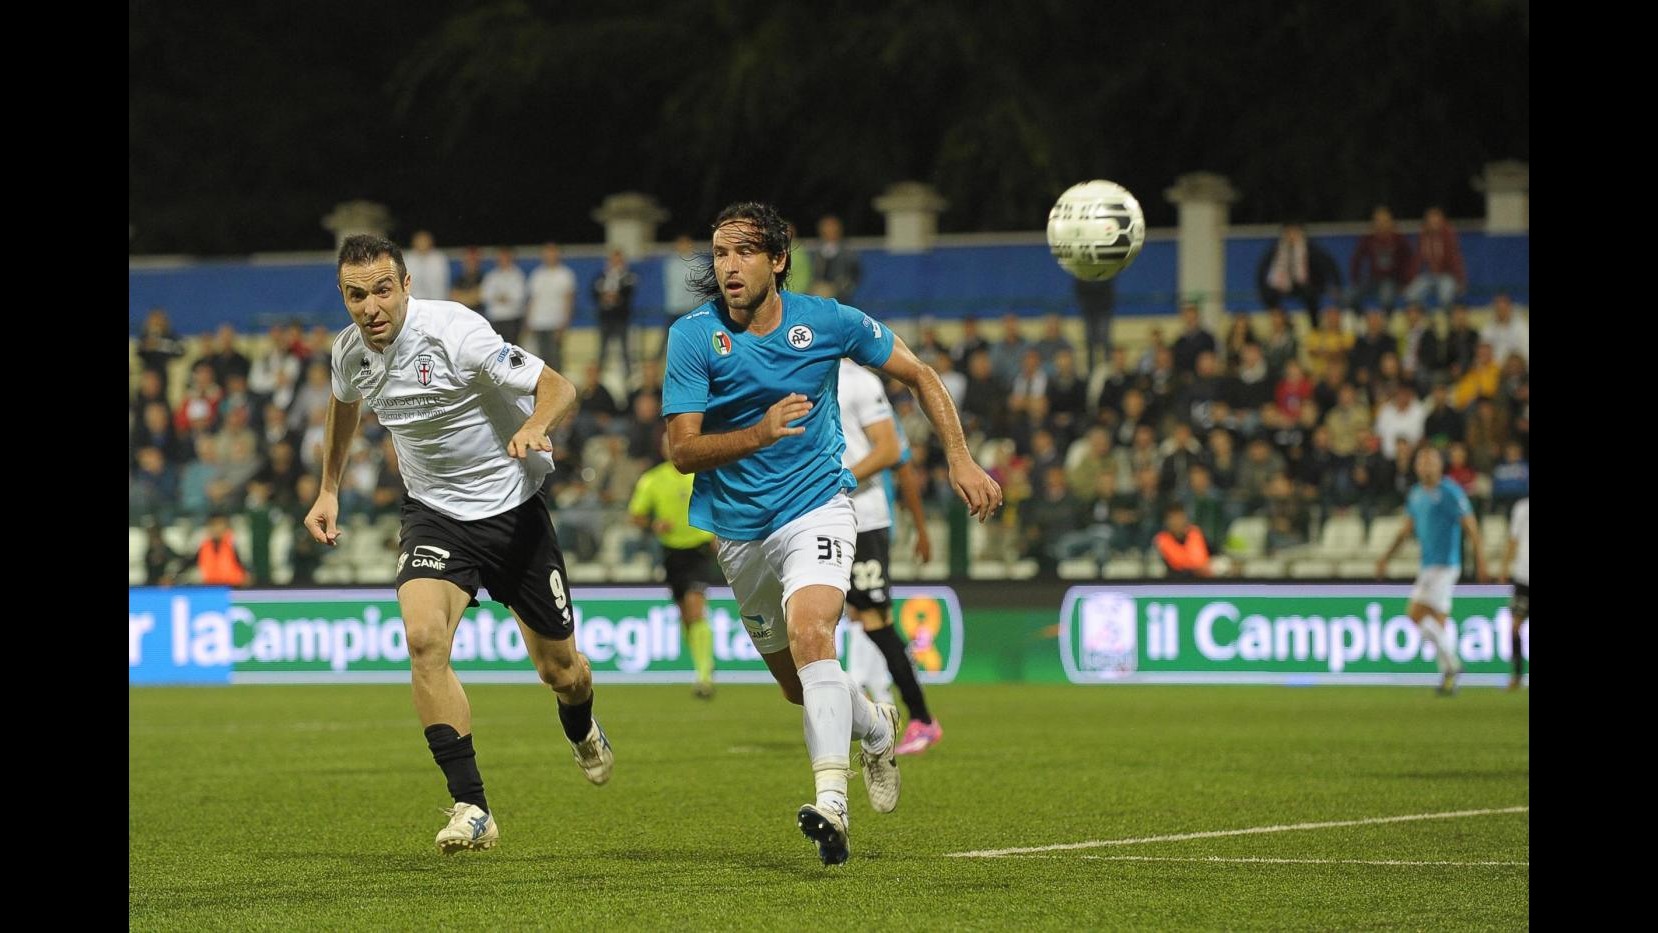 Serie B, Pro Vercelli-Spezia 1-0 nell’anticipo: decide Marchi su rigore